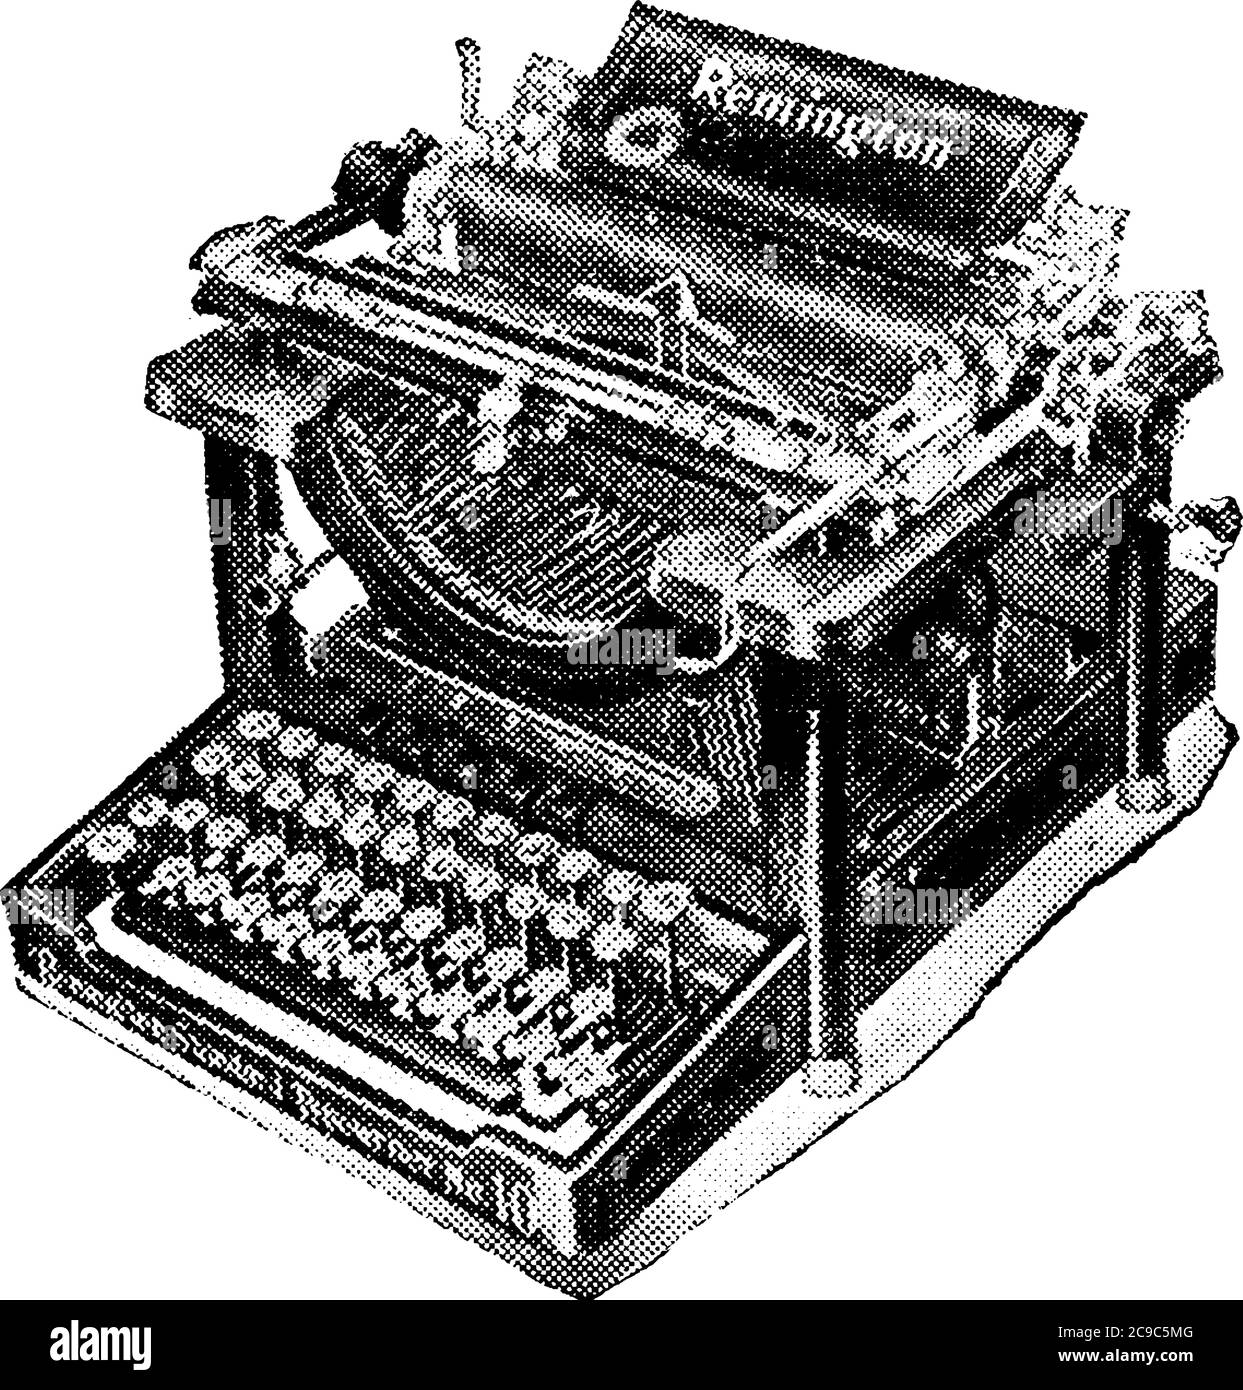 Macchina da scrivere, una macchina dotata di tipi che stampano mediante pressione sui tasti con le dita. Una serie di aste imperniate ad aste a chiavetta, simile alla Illustrazione Vettoriale